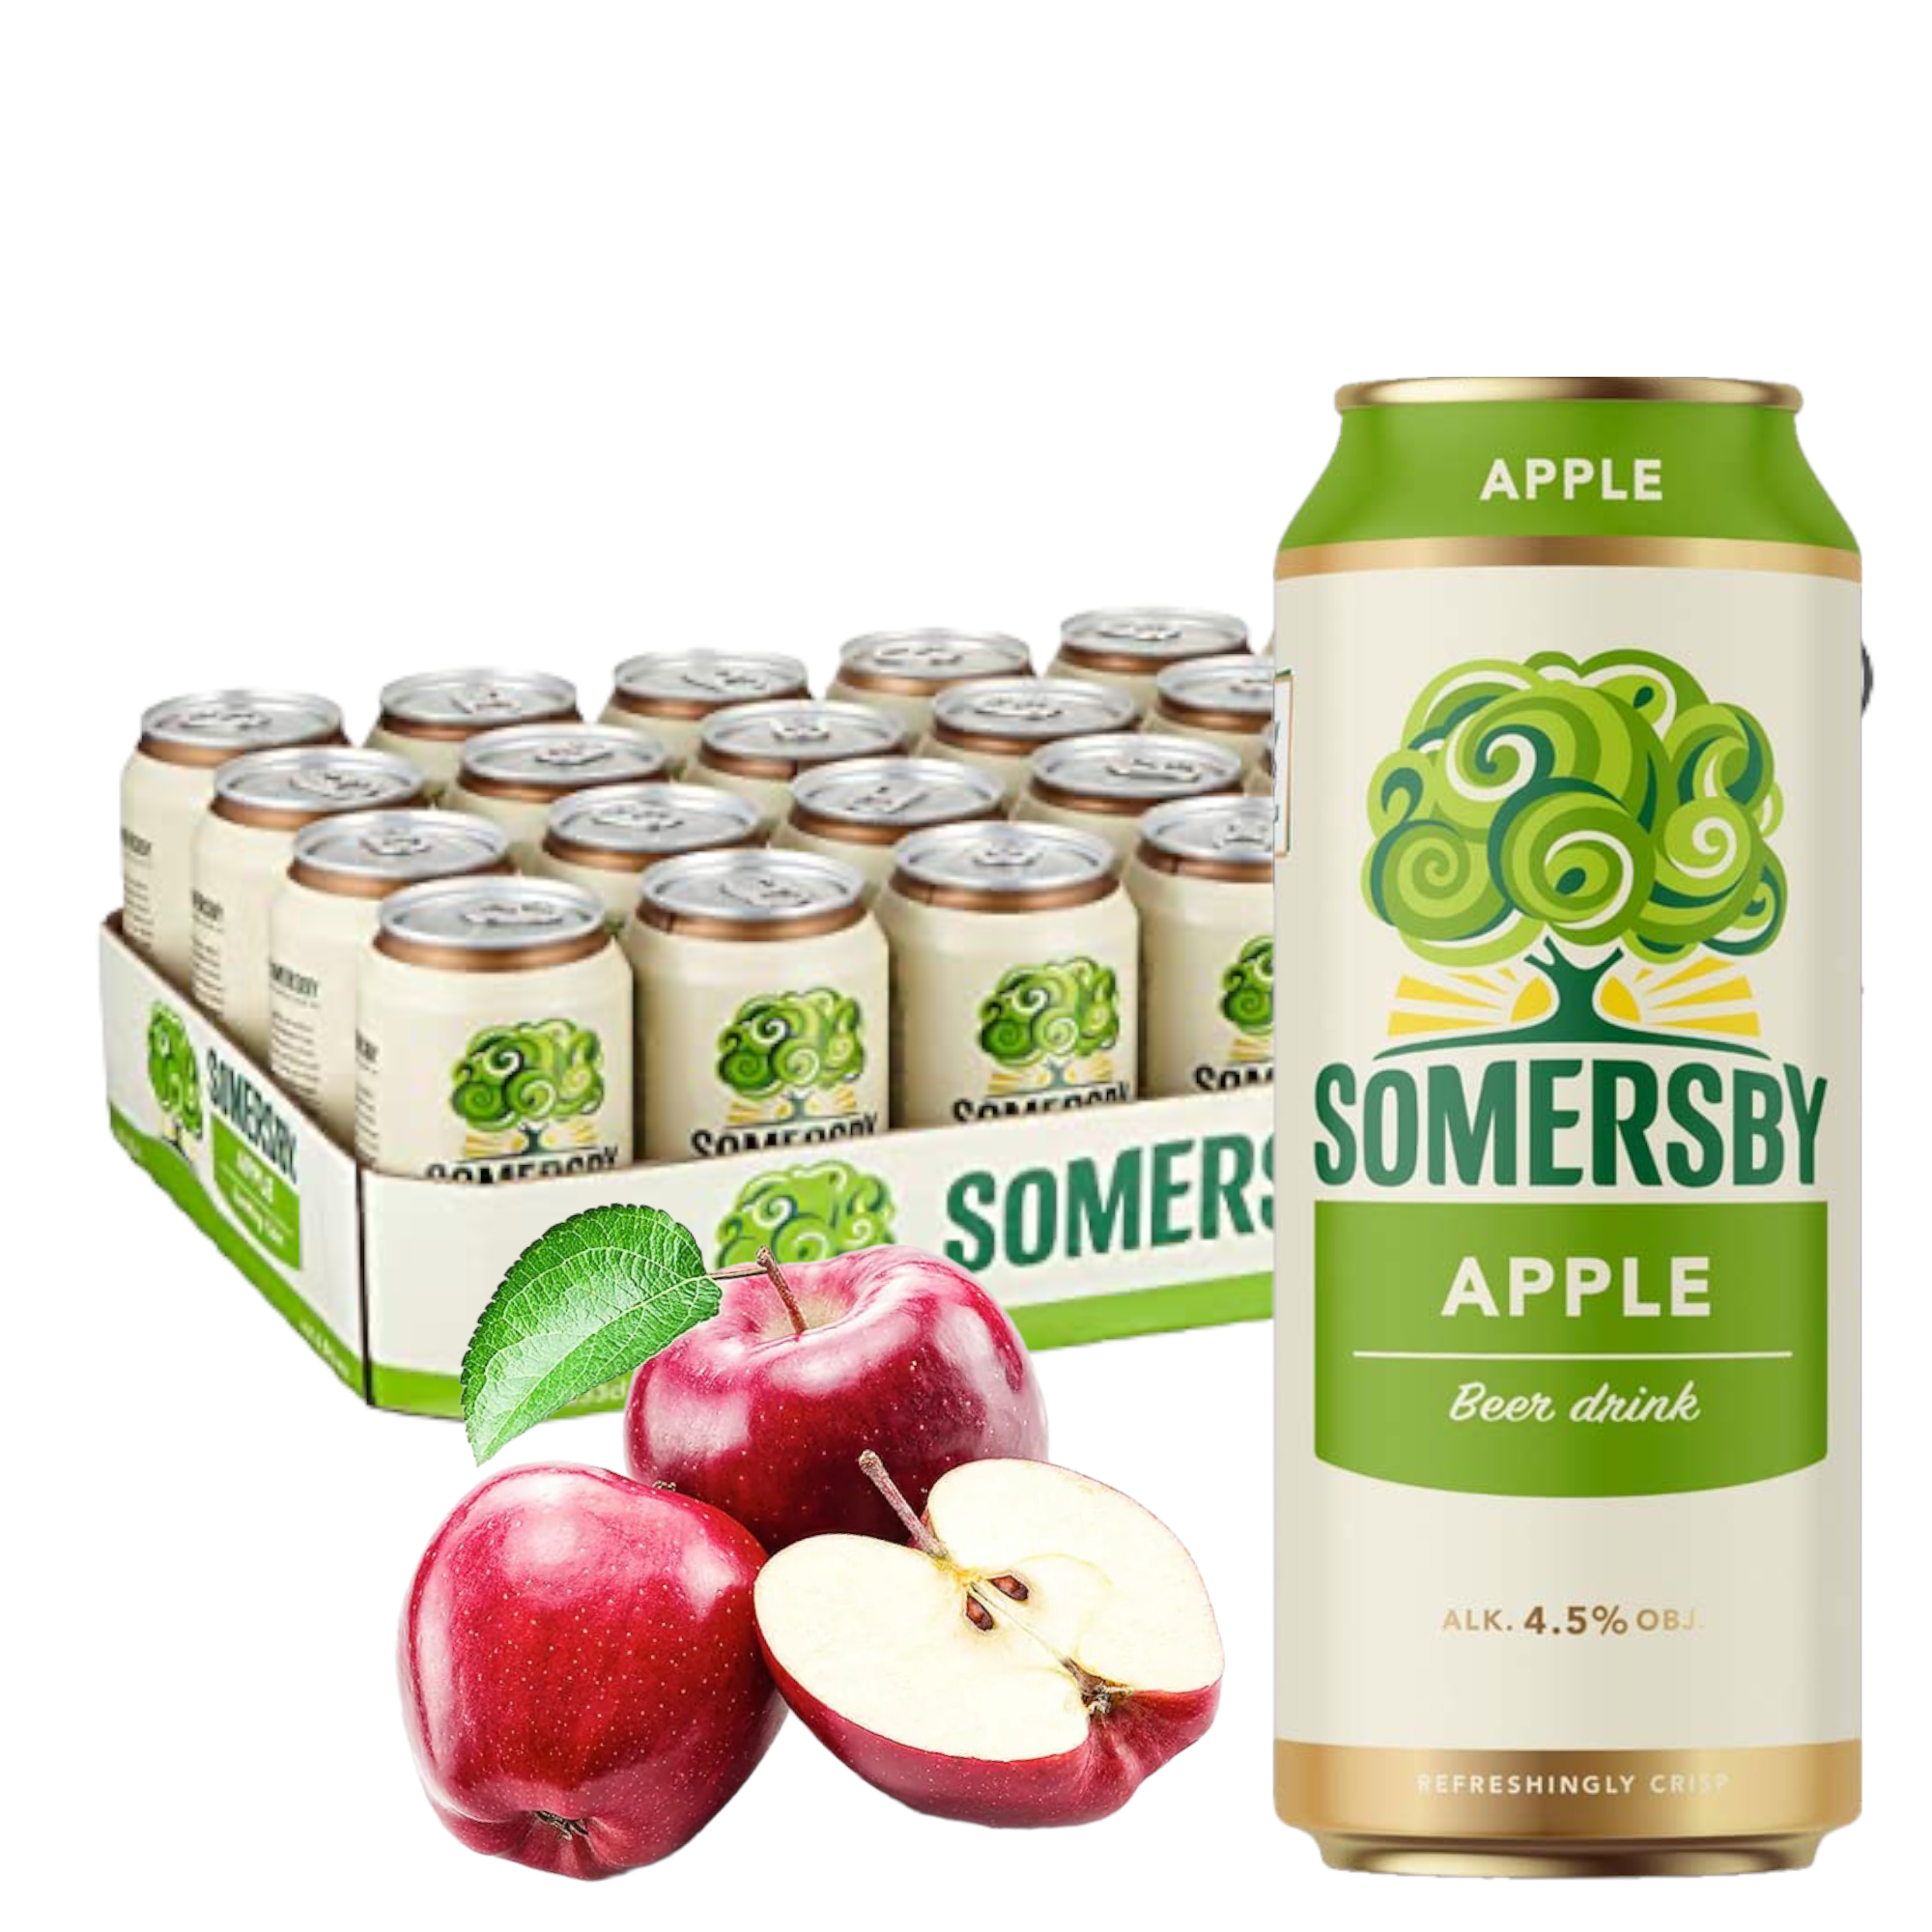 Somersby Apple 0,5l mit 4,5% Vol. - Biermischgetränk mit Apfel